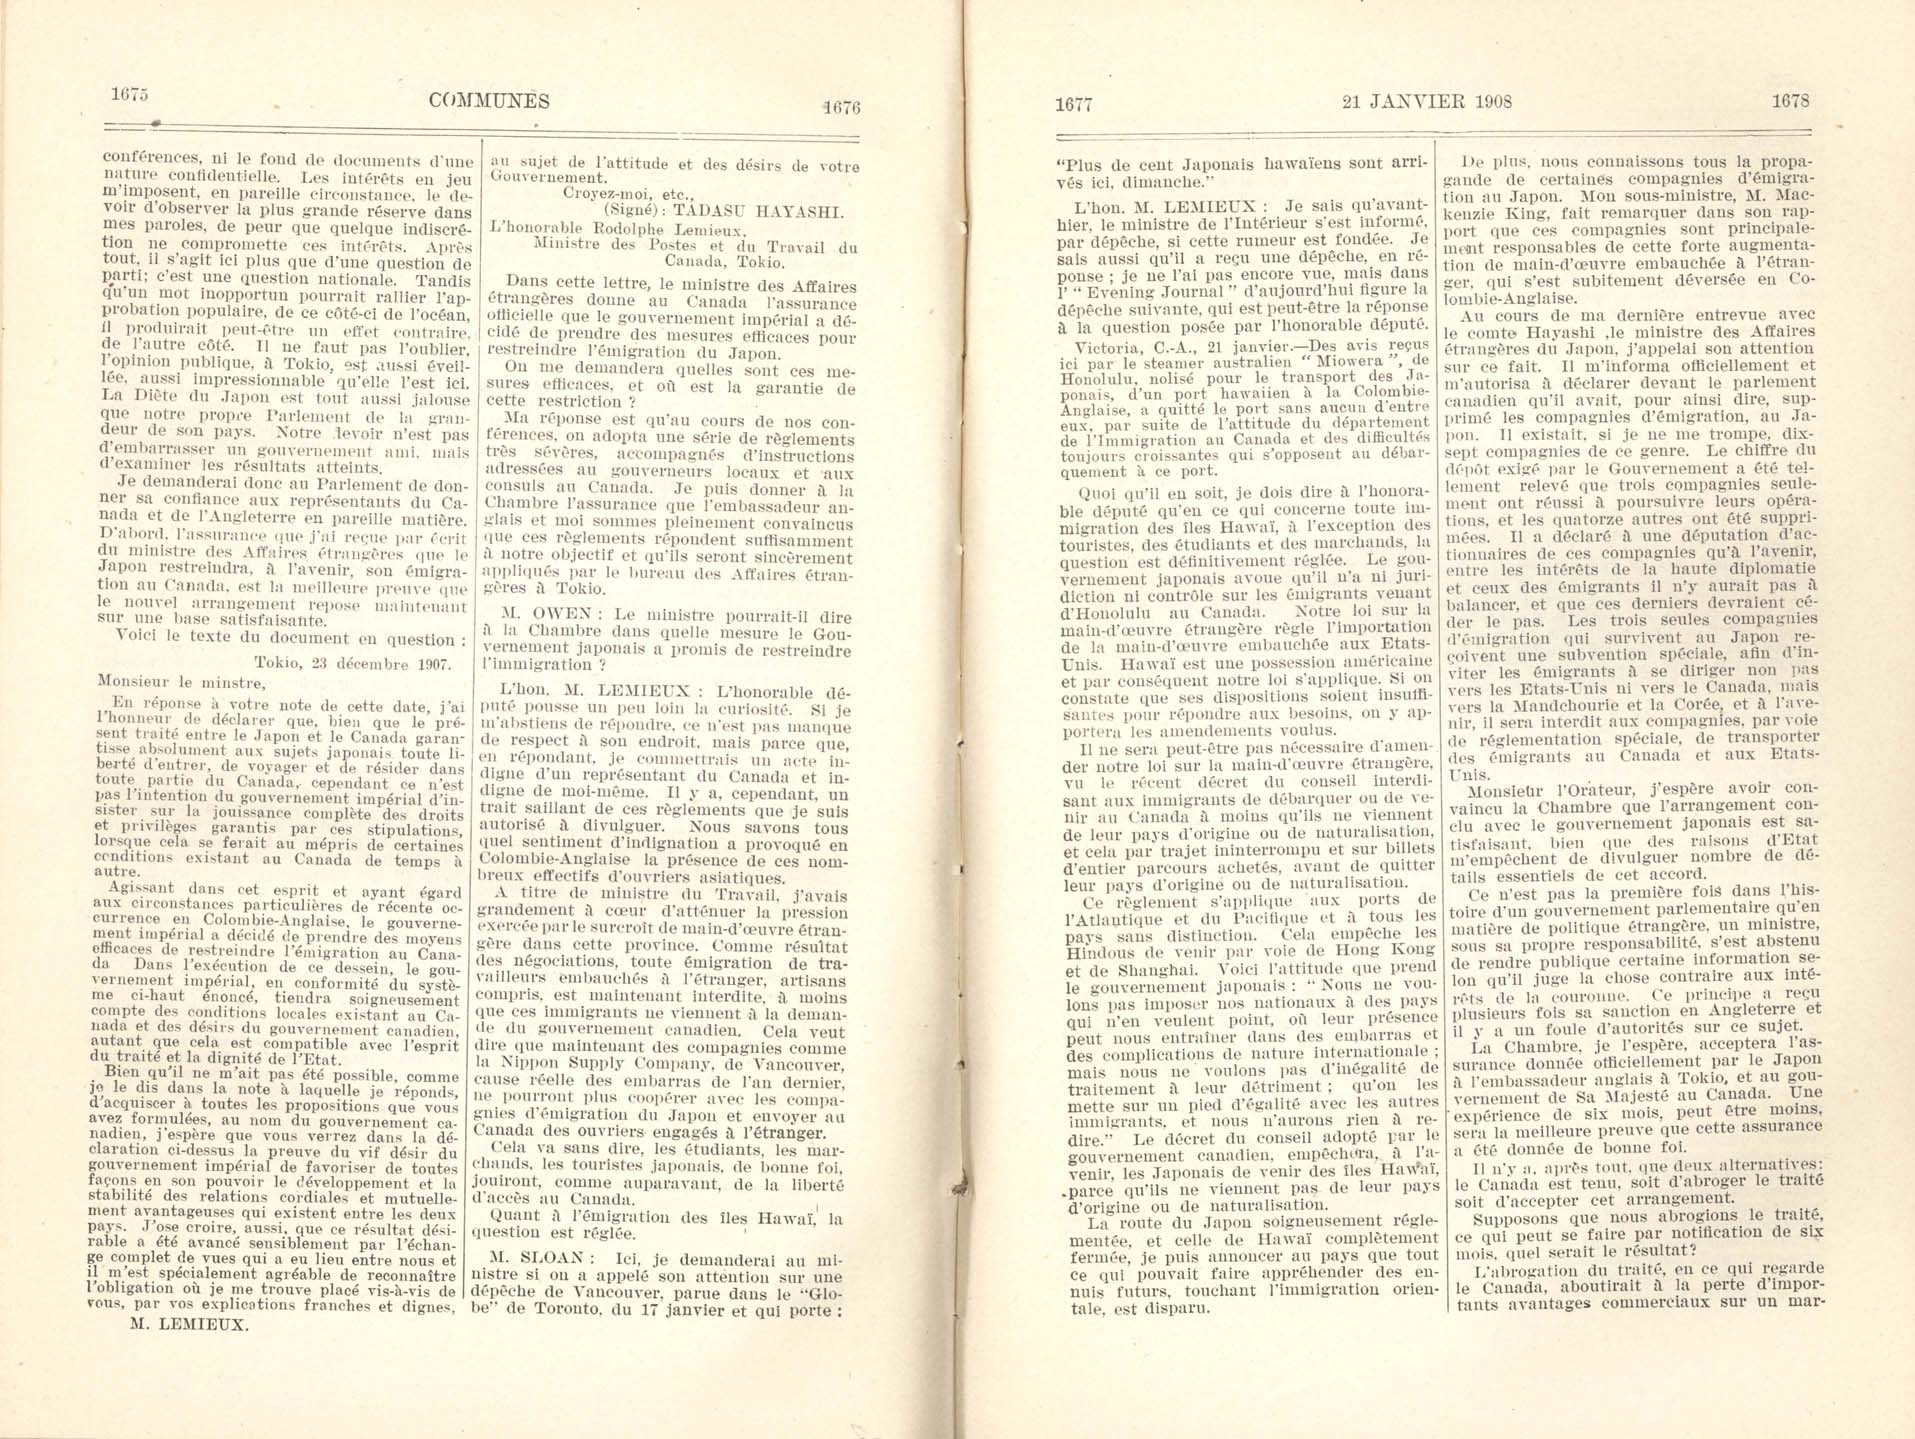 Page 1675, 1676, 1677, 1678 Entente à l’amiable, 1908